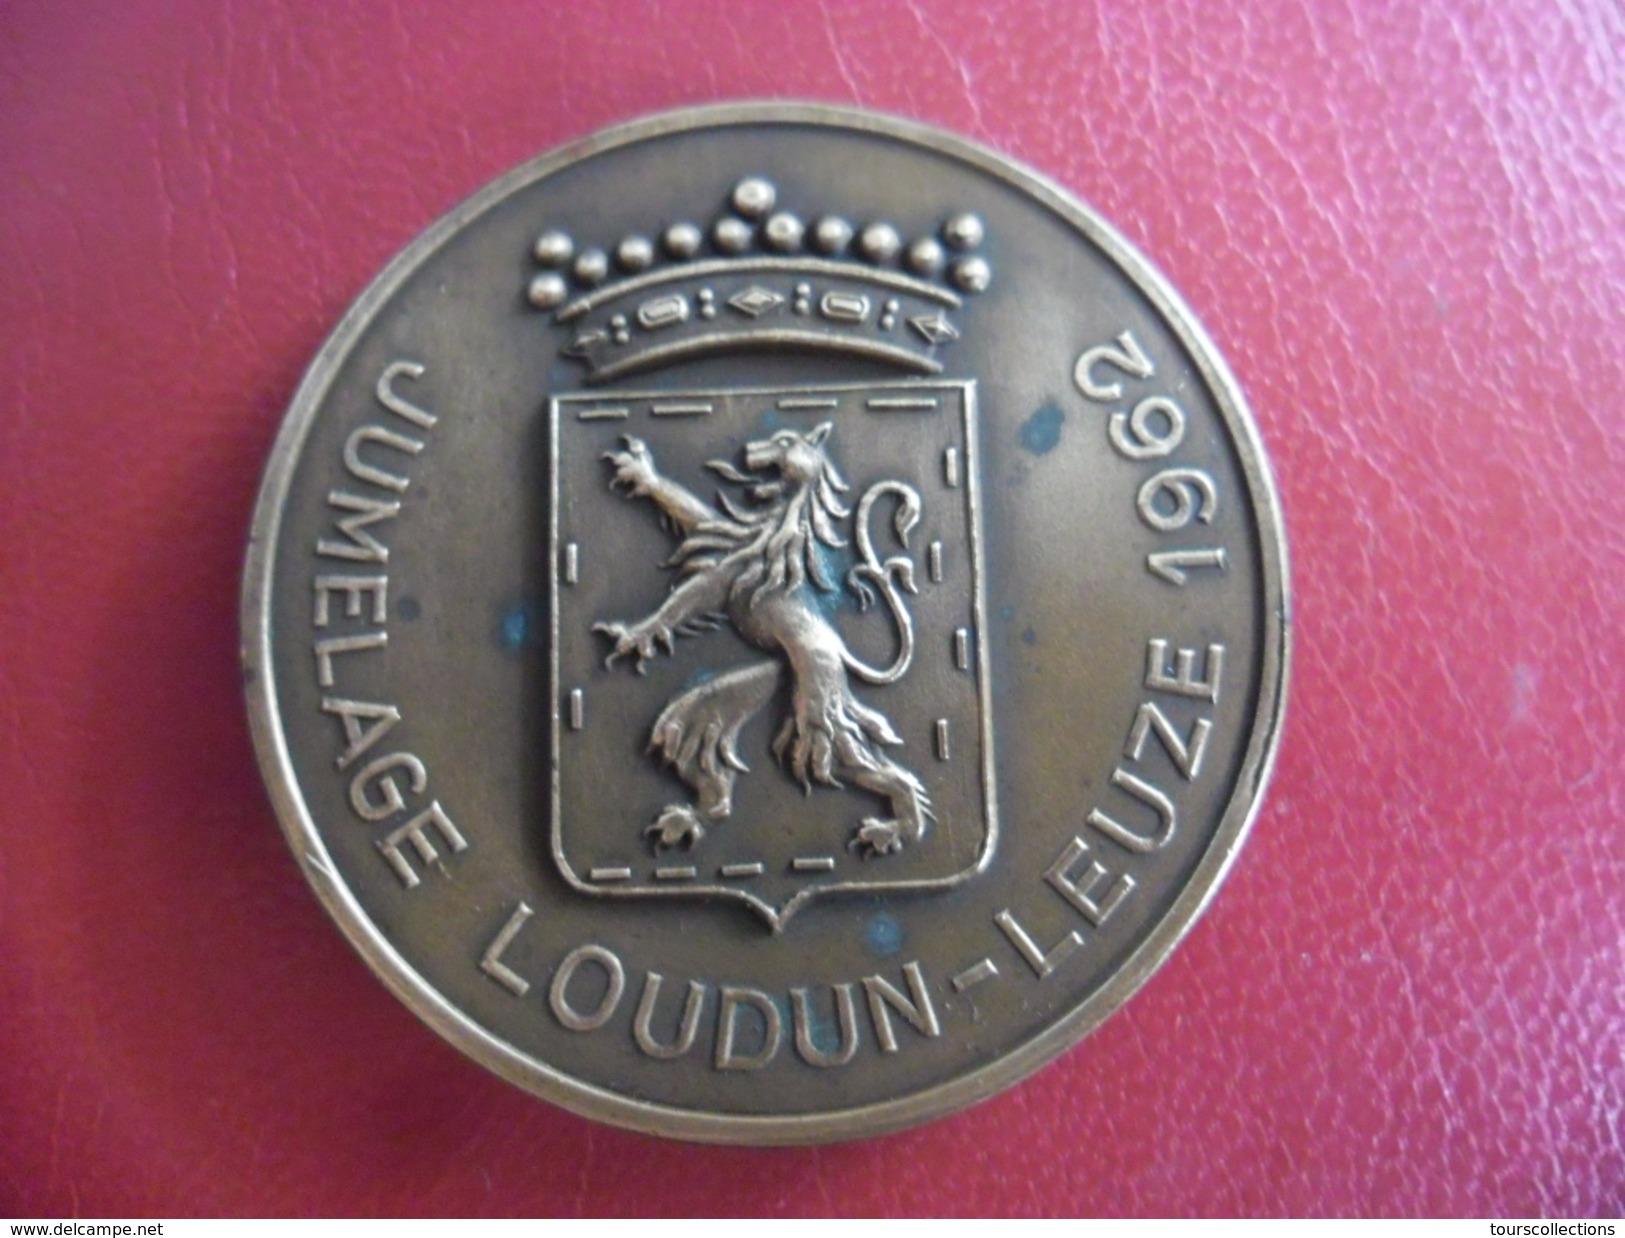 MEDAILLE De Bronze Jumelage LOUDUN - LEUZE 1962 @ 51 Mm Pour 55 Gr. H. Daumerie Centre De Bonneterie @ Lion Héraldique - Professionnels / De Société